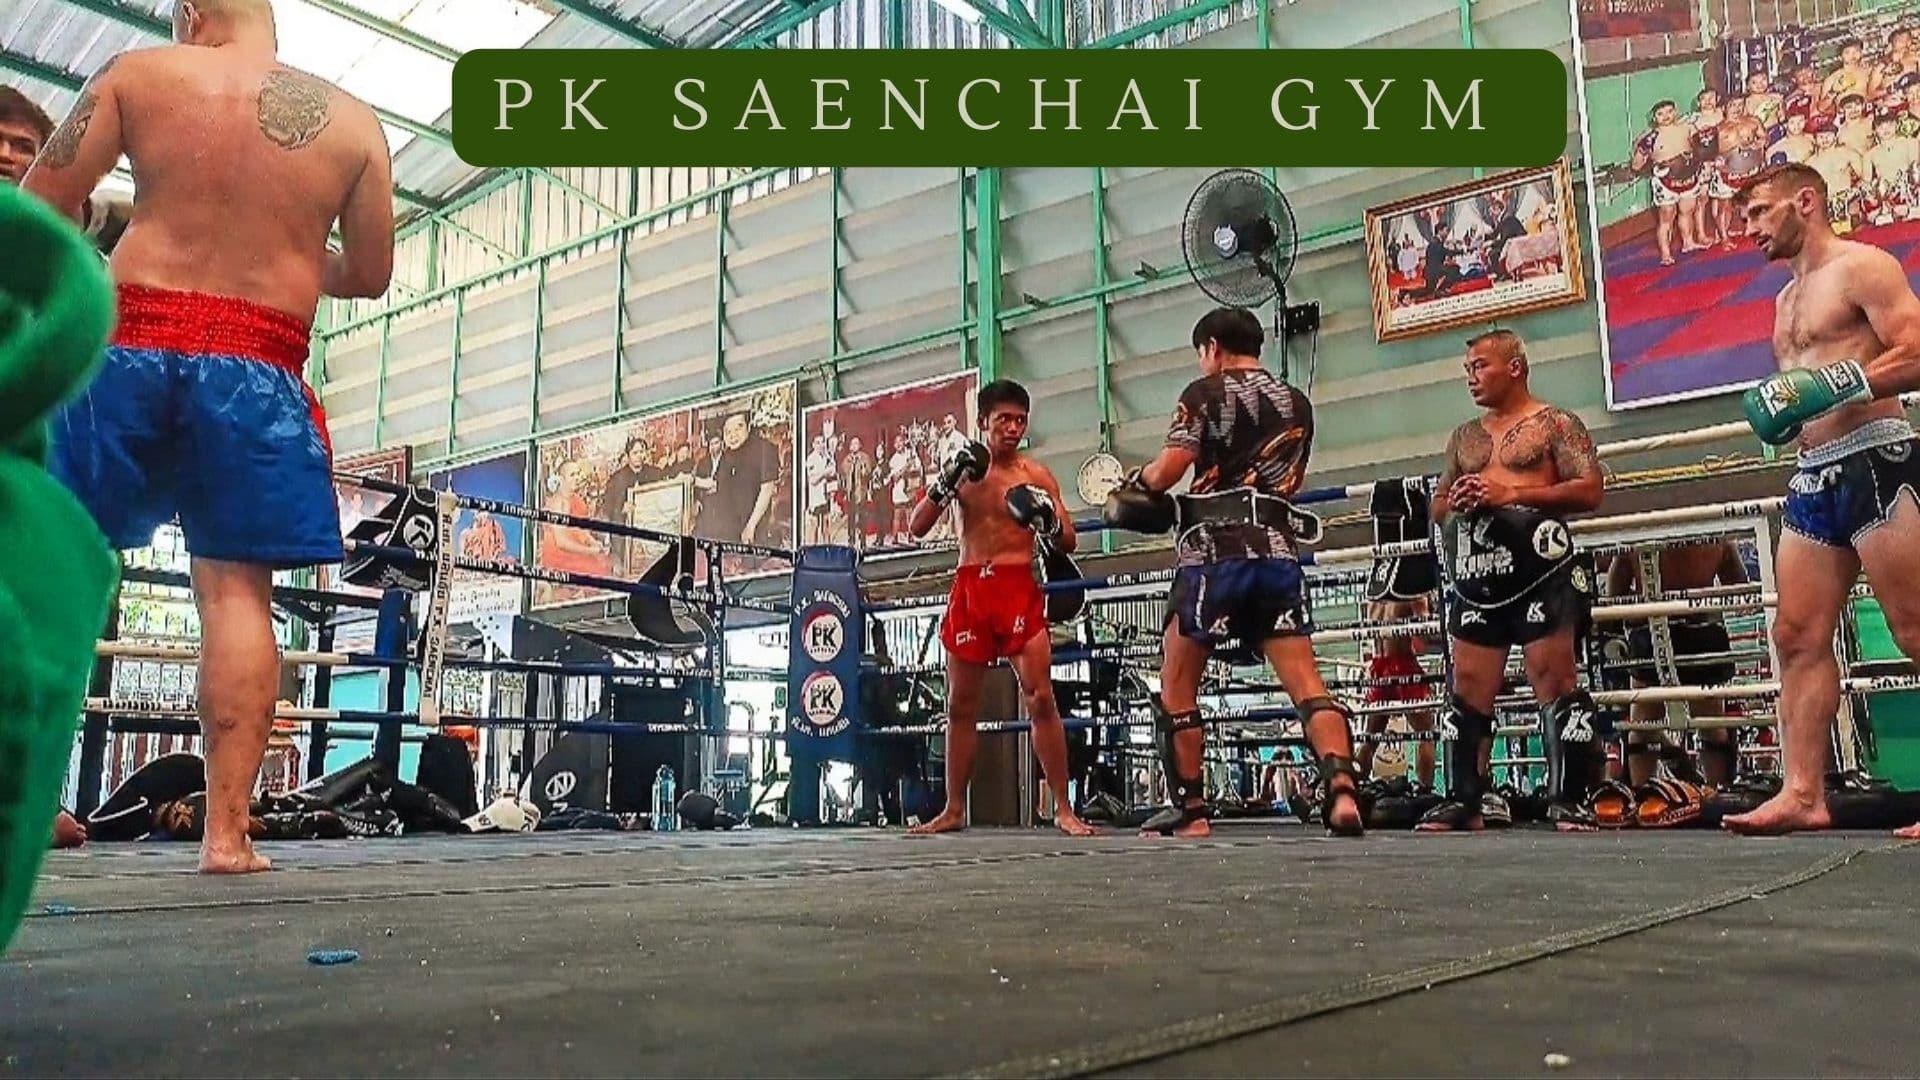 Pk Saenchai Gym backdrop